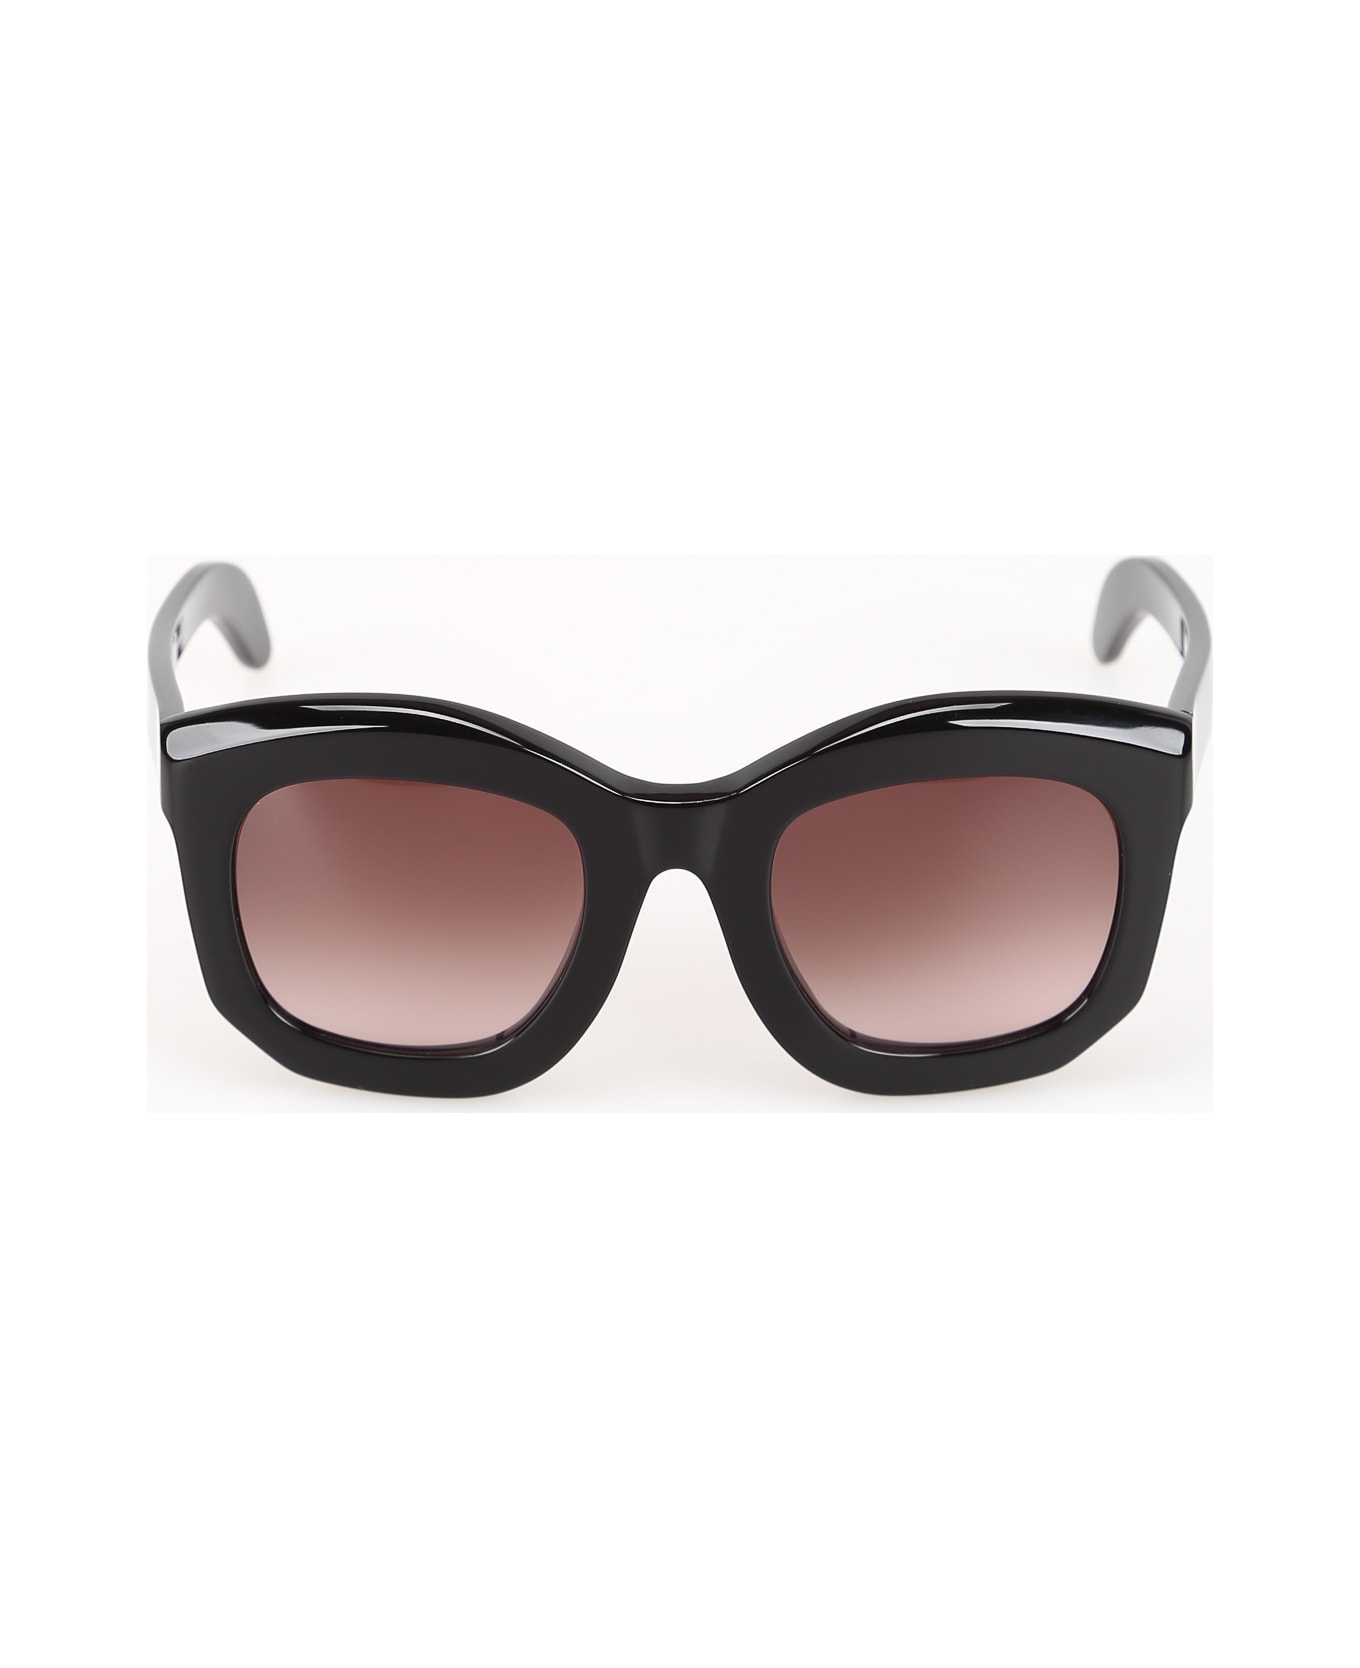 Kuboraum B2 Sunglasses - Bs サングラス